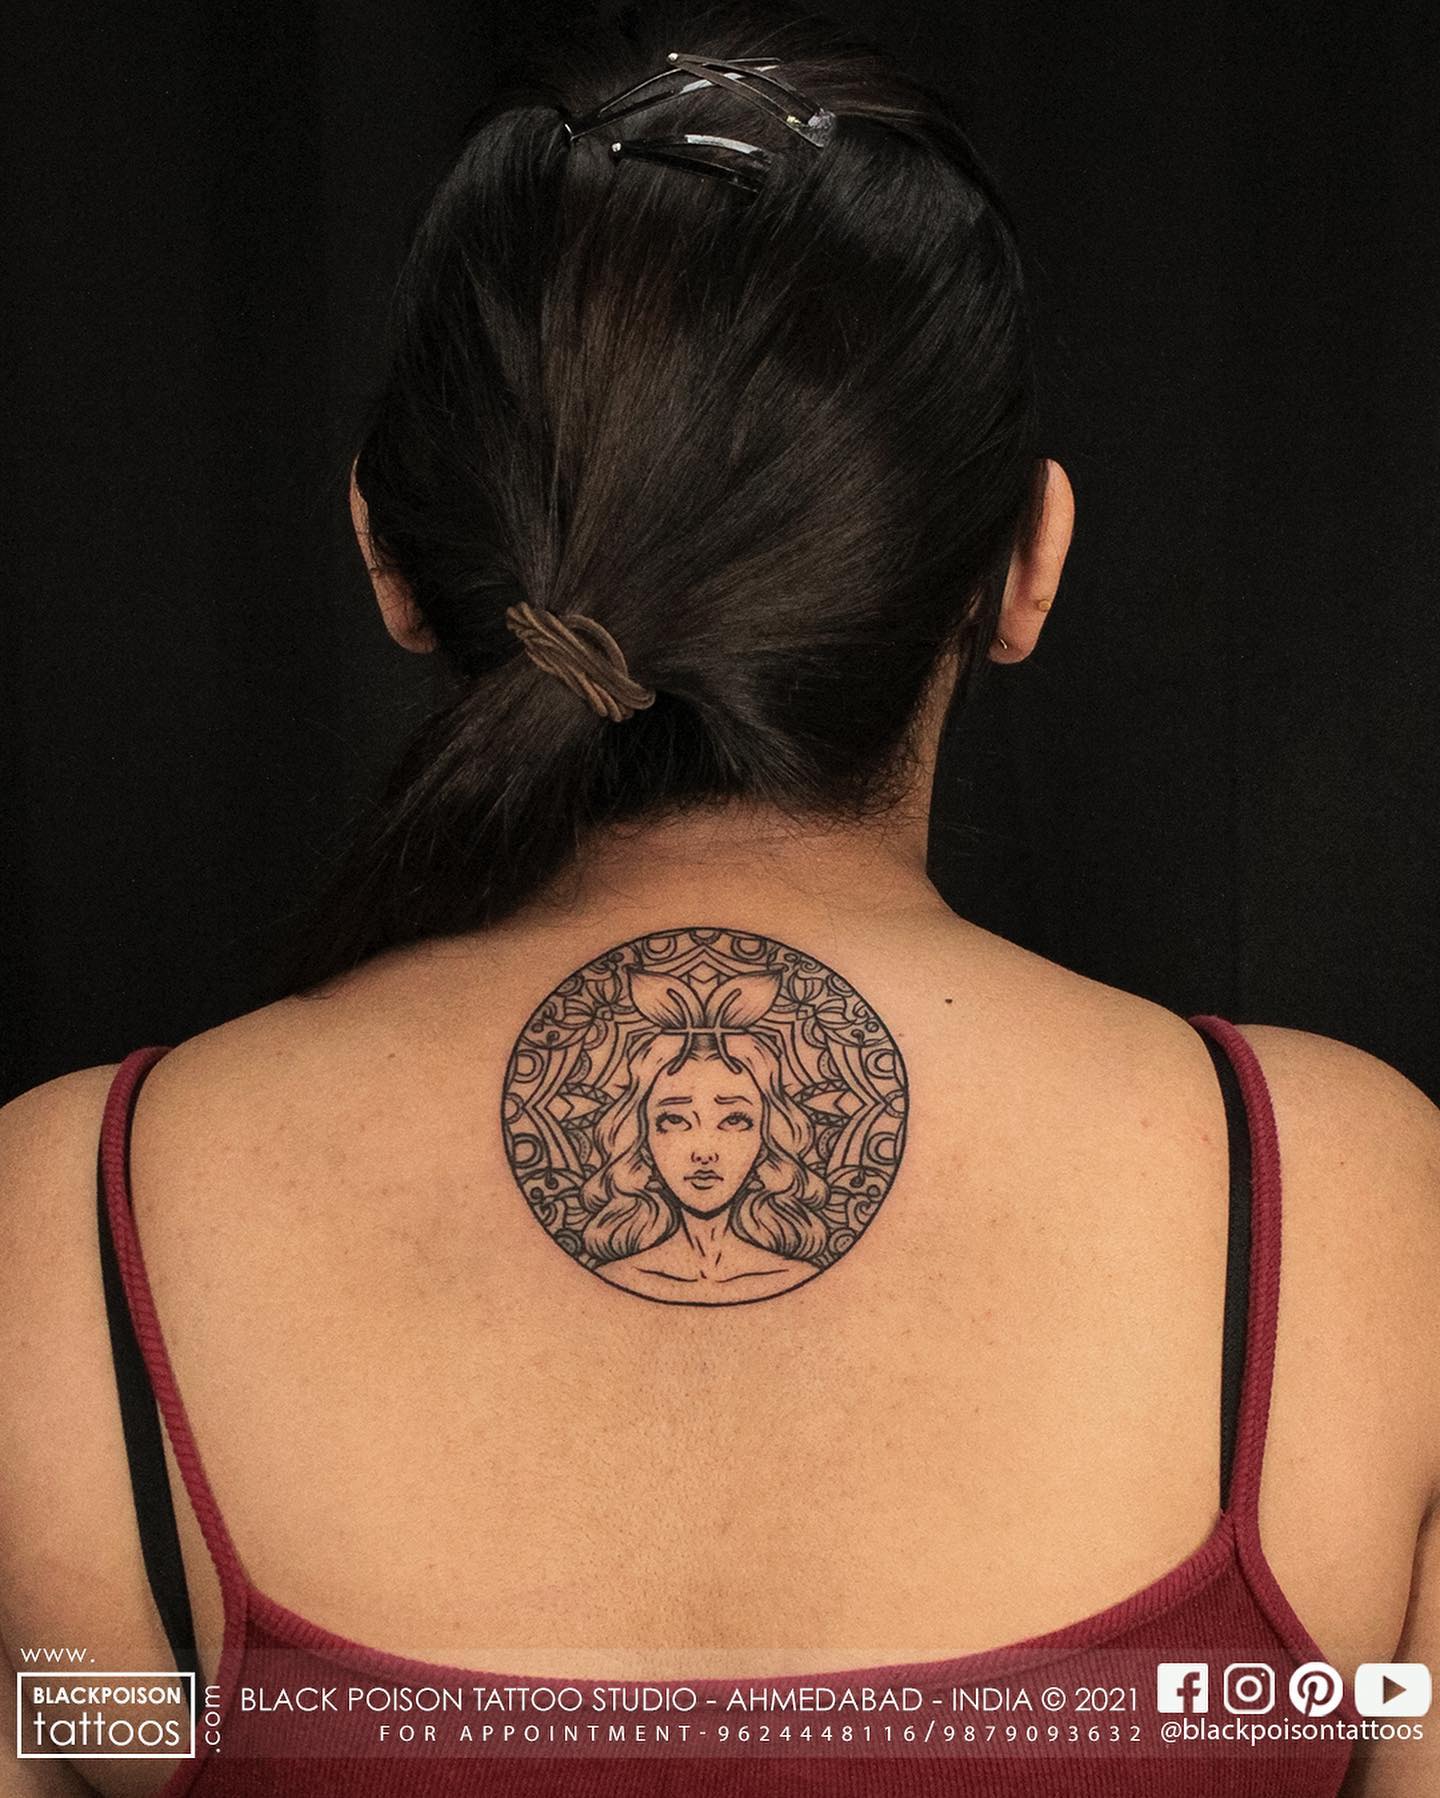 Tatuaje de Piscis en la espalda.